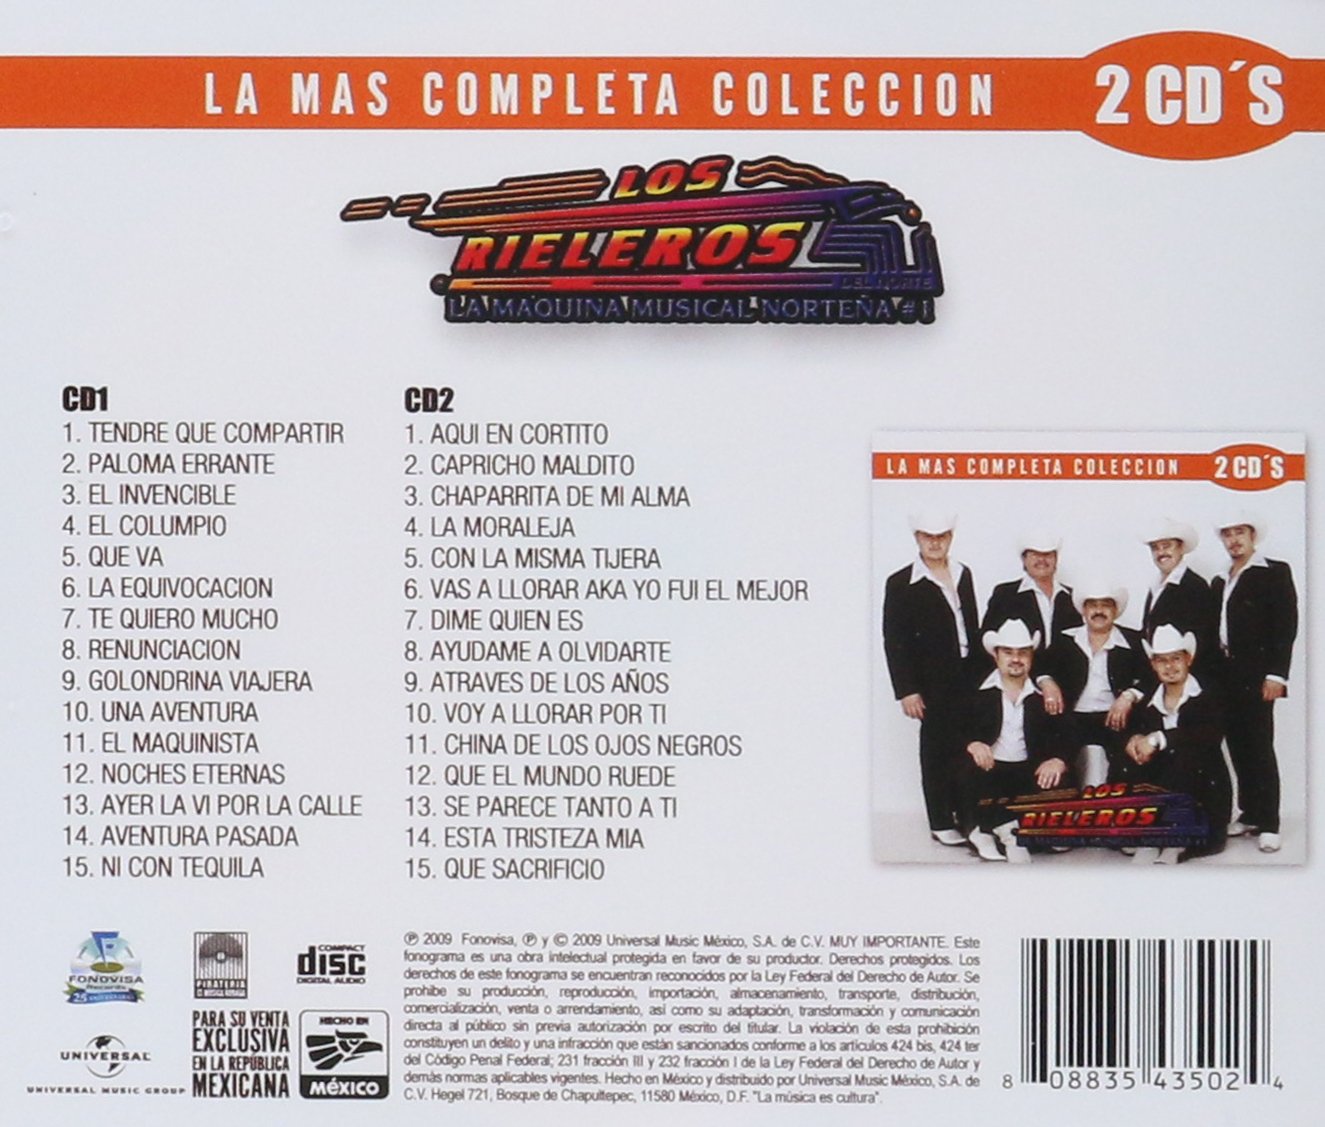 Los Rieleros Del Norte - La Mas Completa Coleccion (CD)